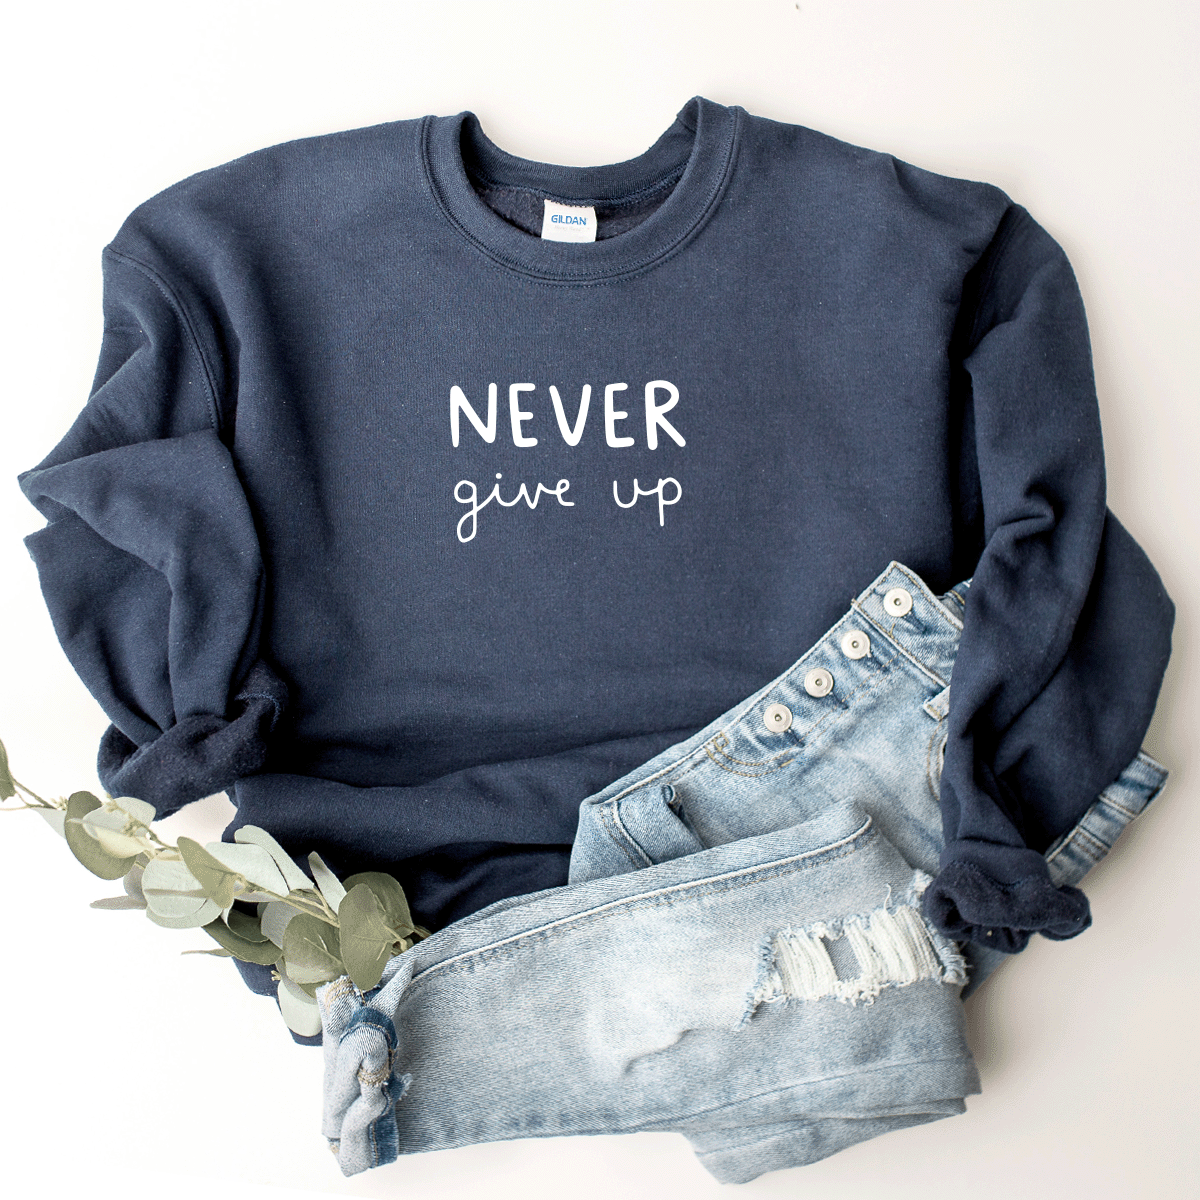 Never Give Up - Sweatshirt